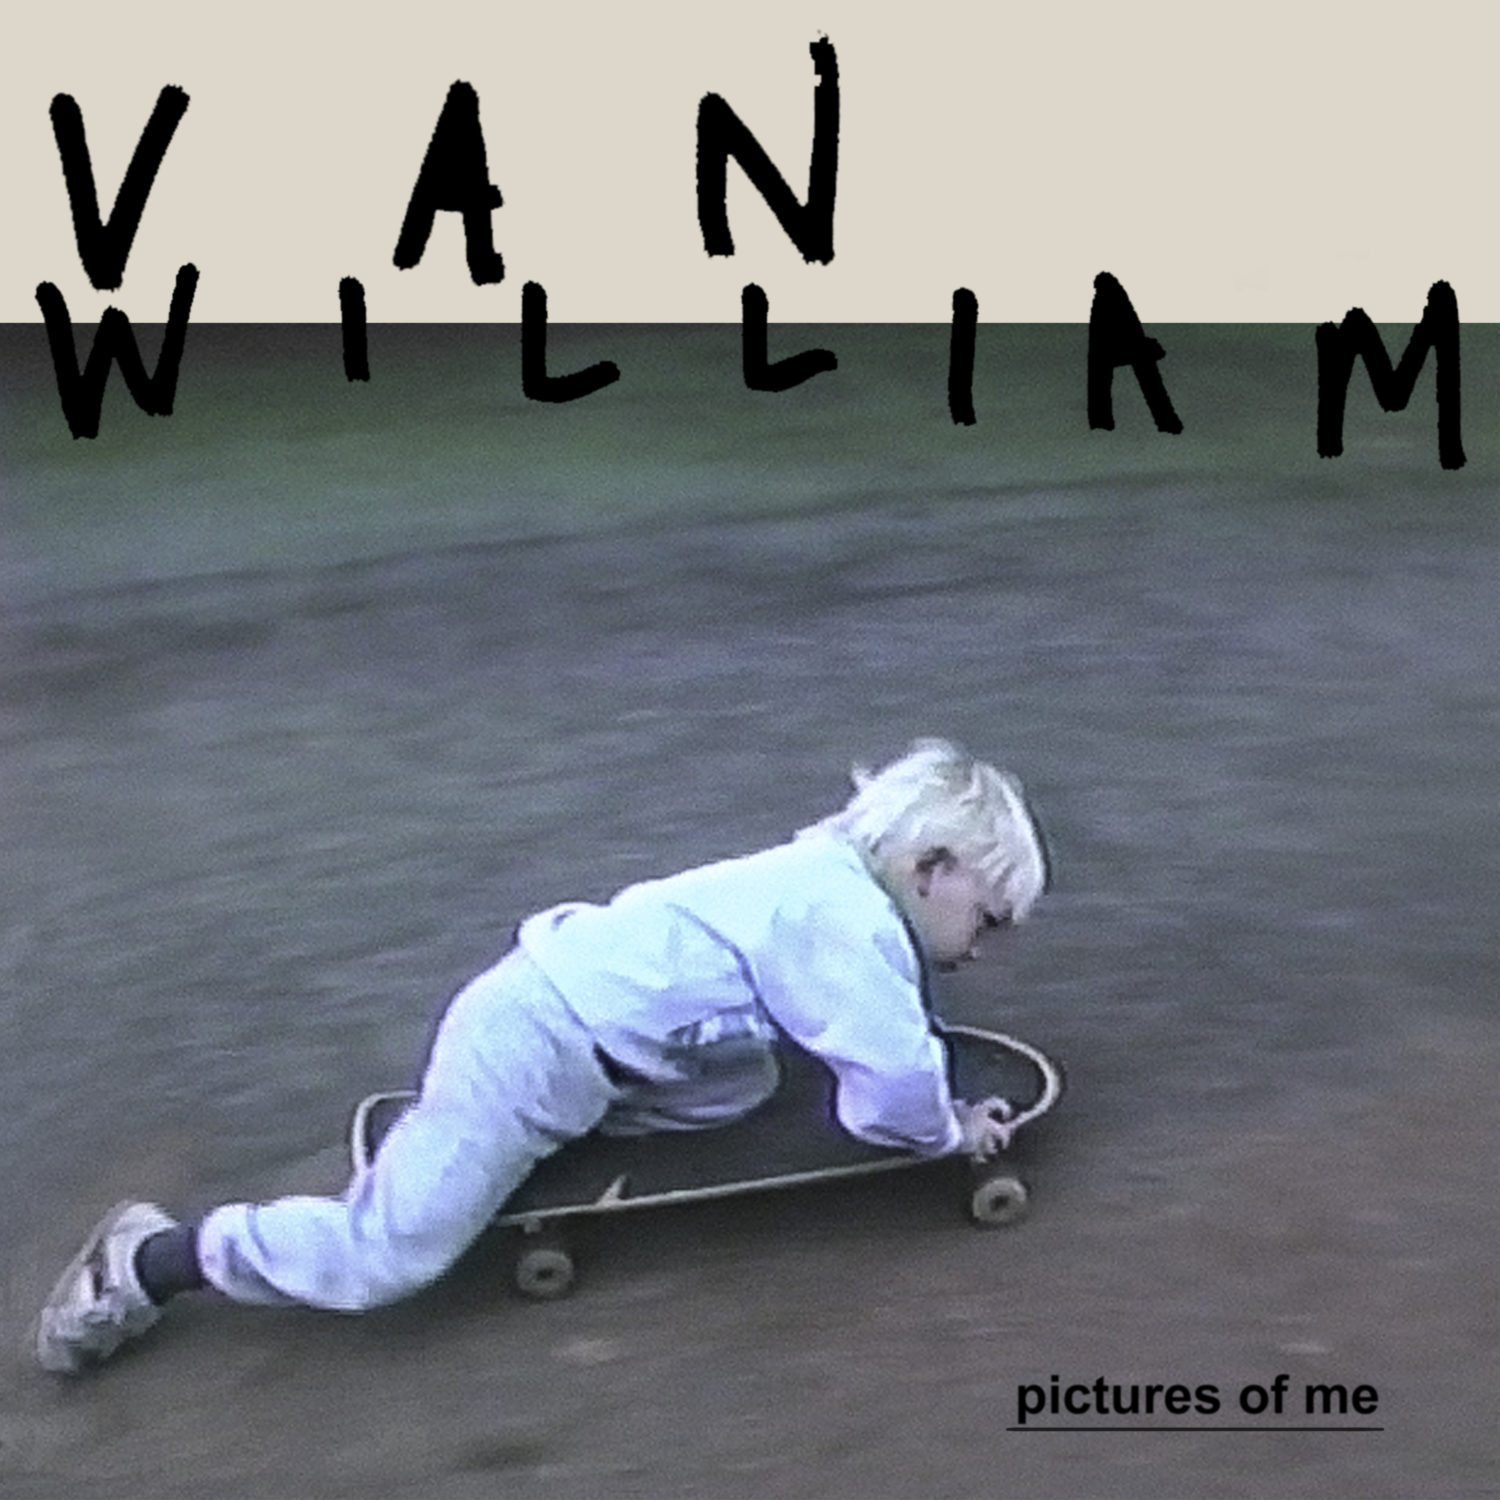 Pictures of Me eSingle - Van Wiliam